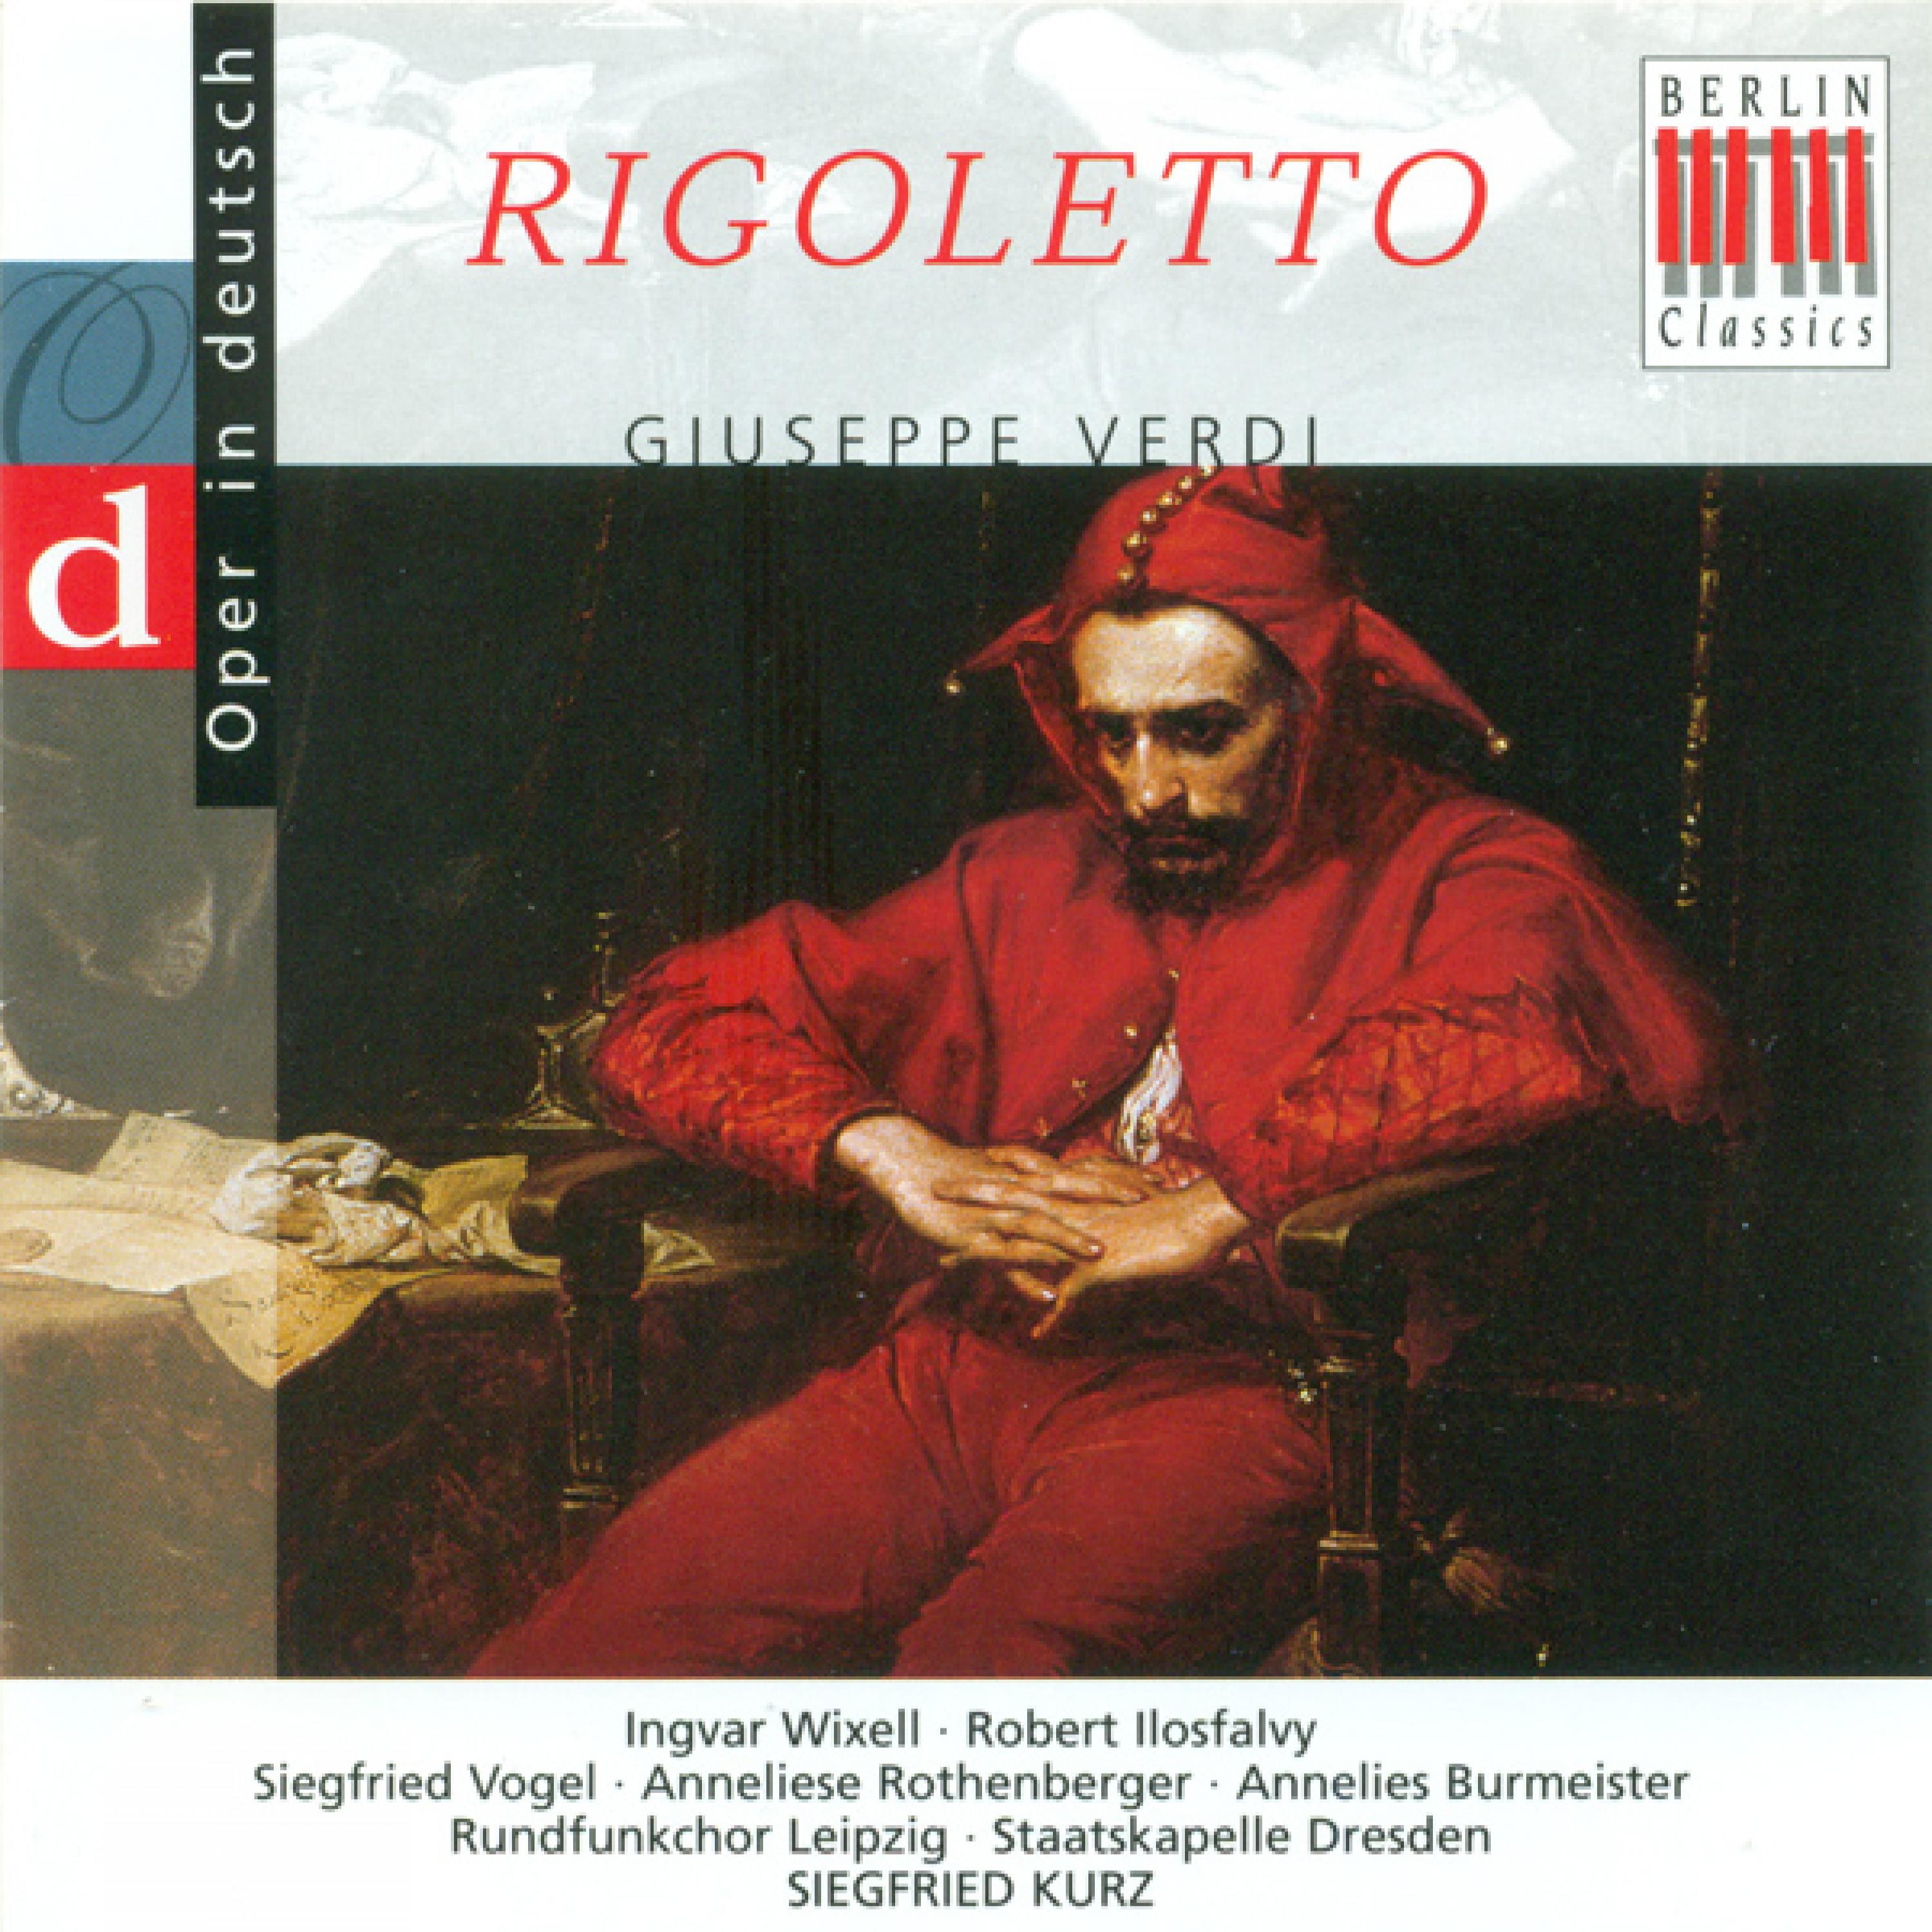 Rigoletto, Act II: "Ach! Weine, weine, o weine an meinem Herzen"